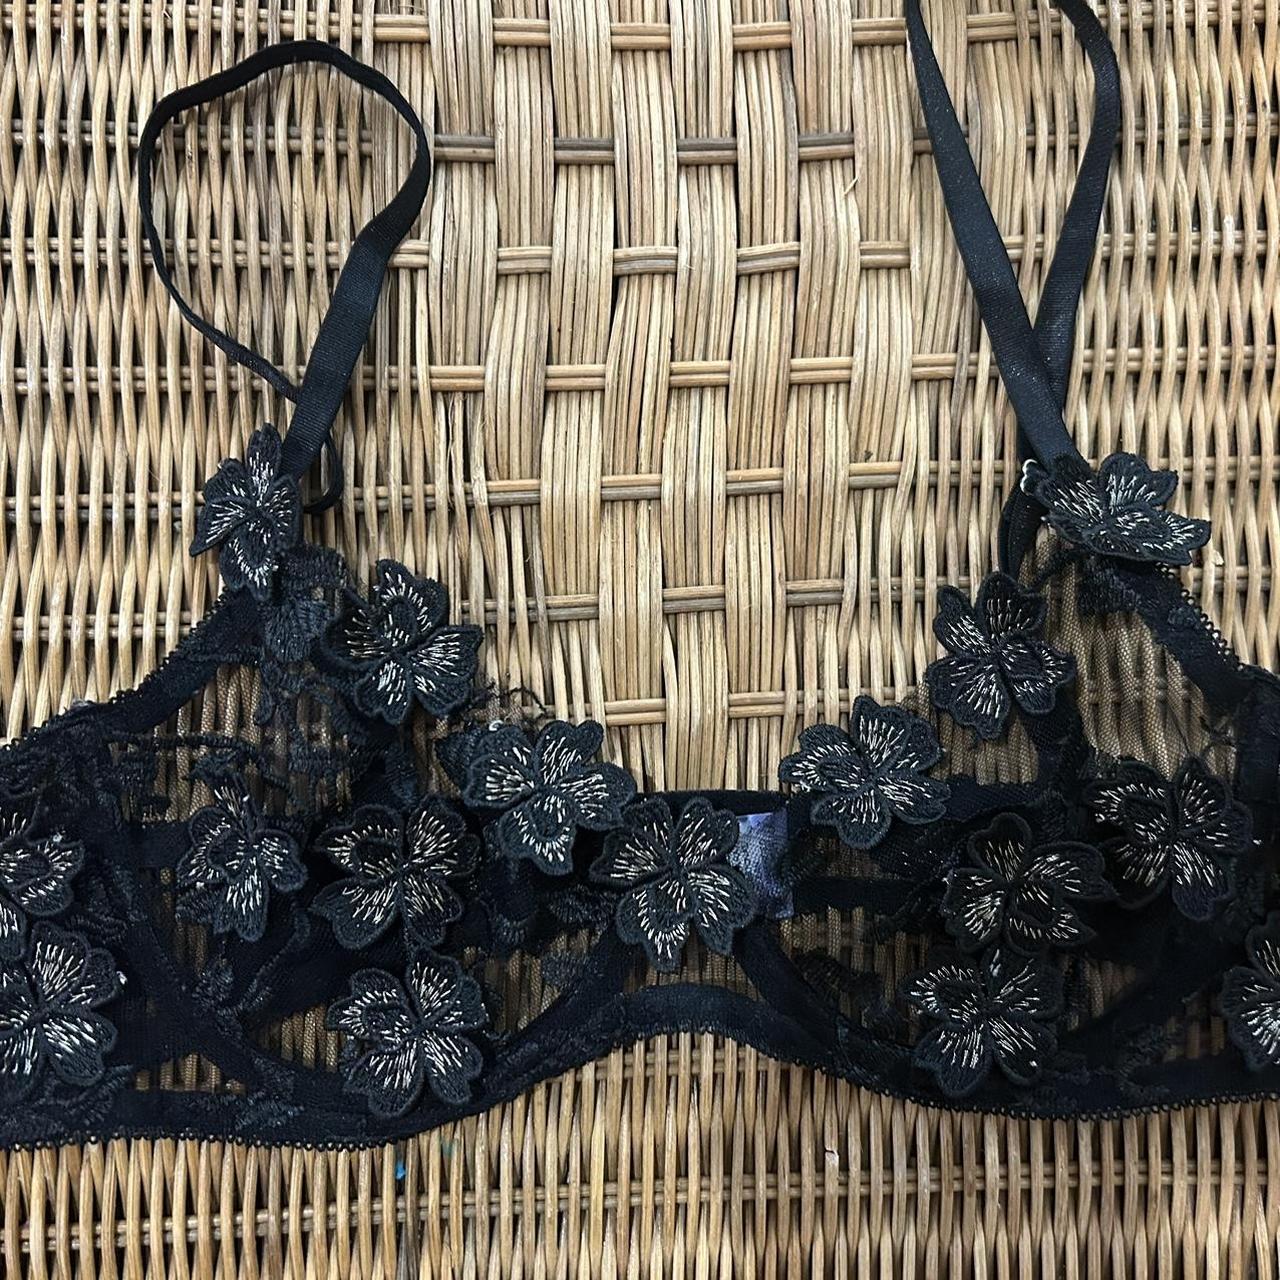 40 C black vintage bra with full support & no - Depop